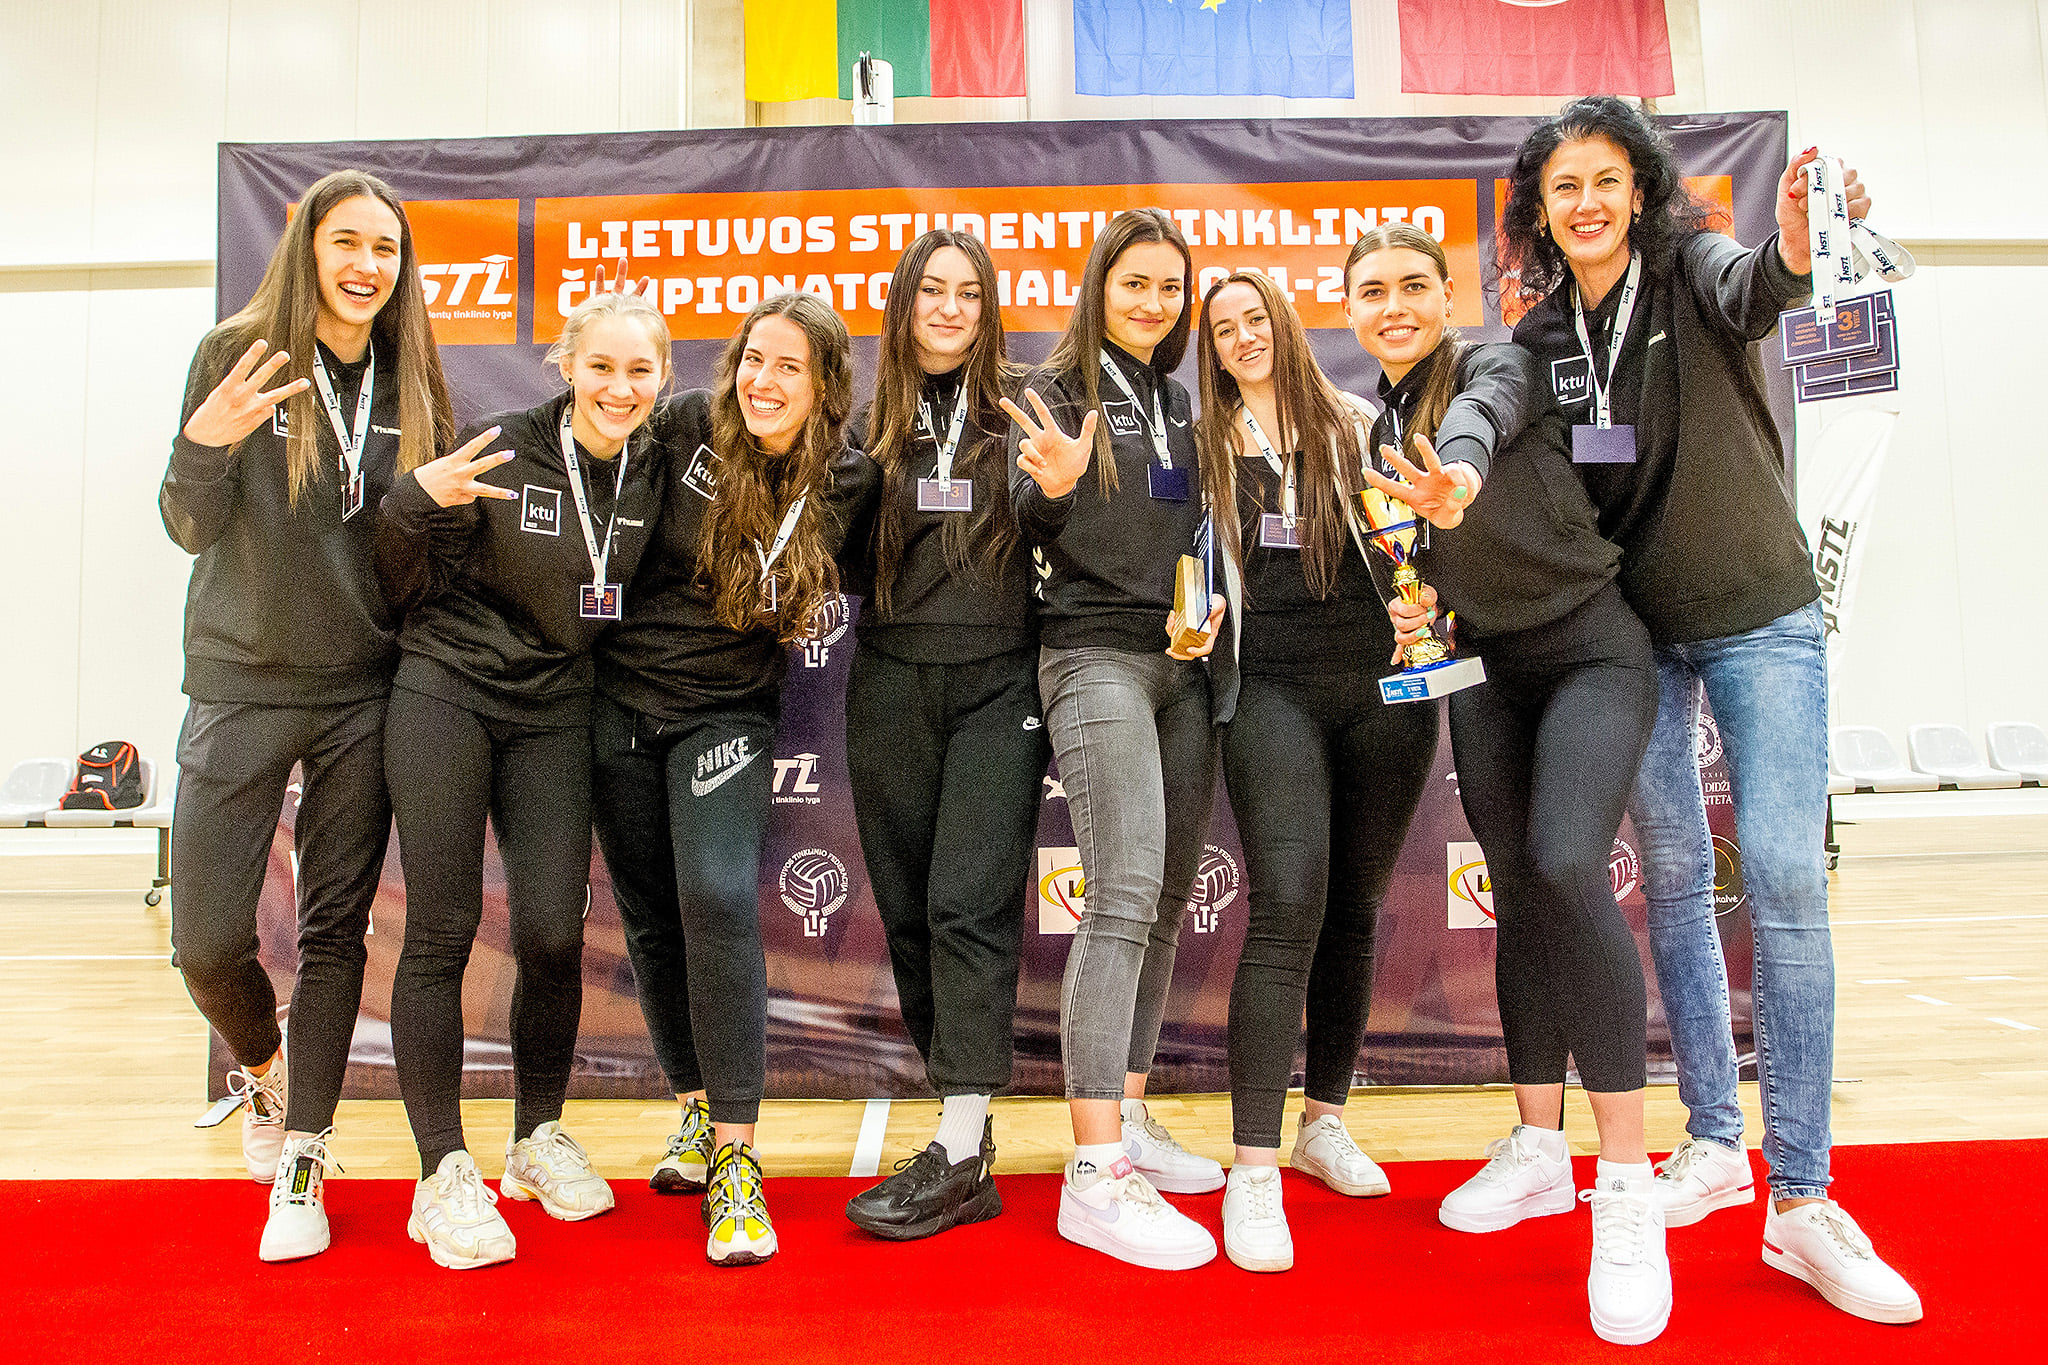 Septynios studentės tinklininkės stovi greta trenerės juodais plaukais